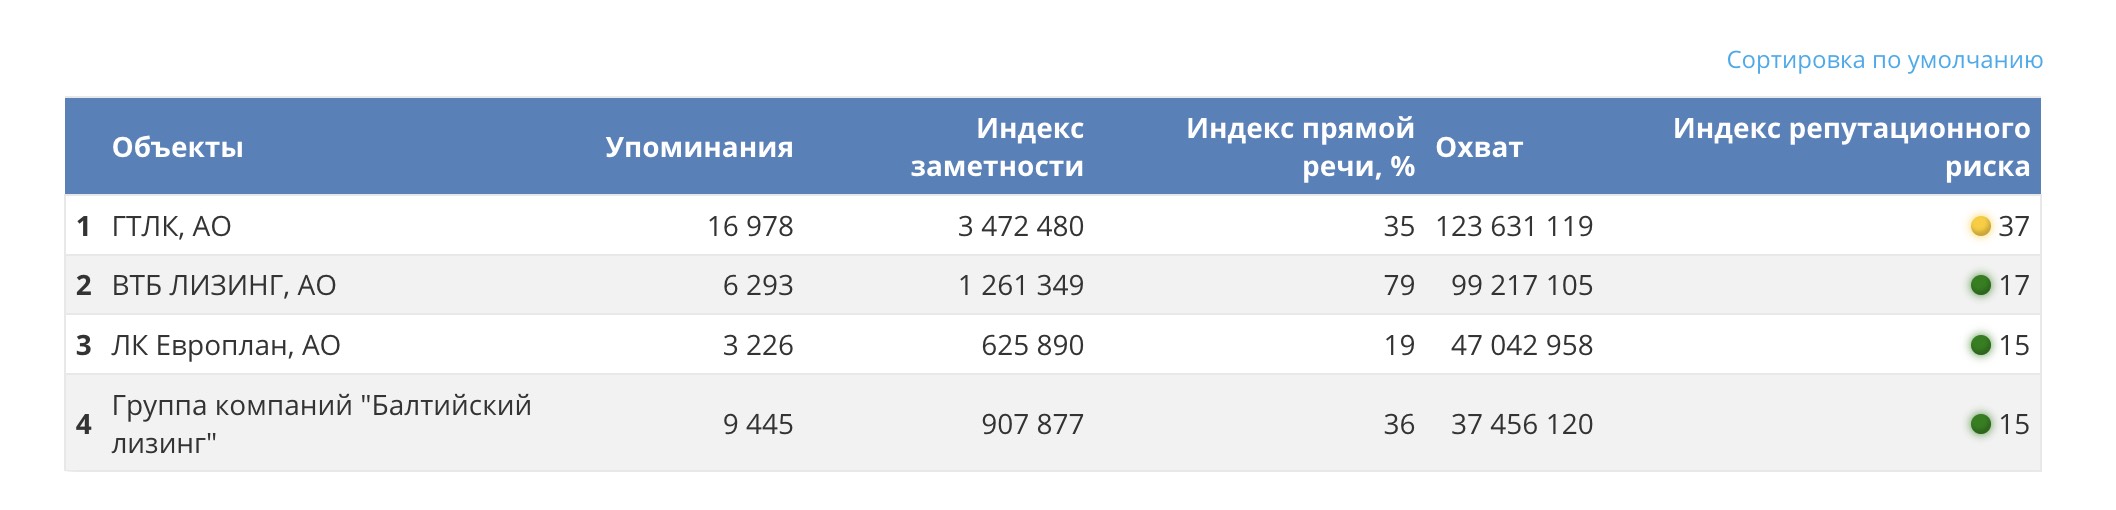 Таблица PR-индексов компании «ГТЛК» и её конкурентов за год